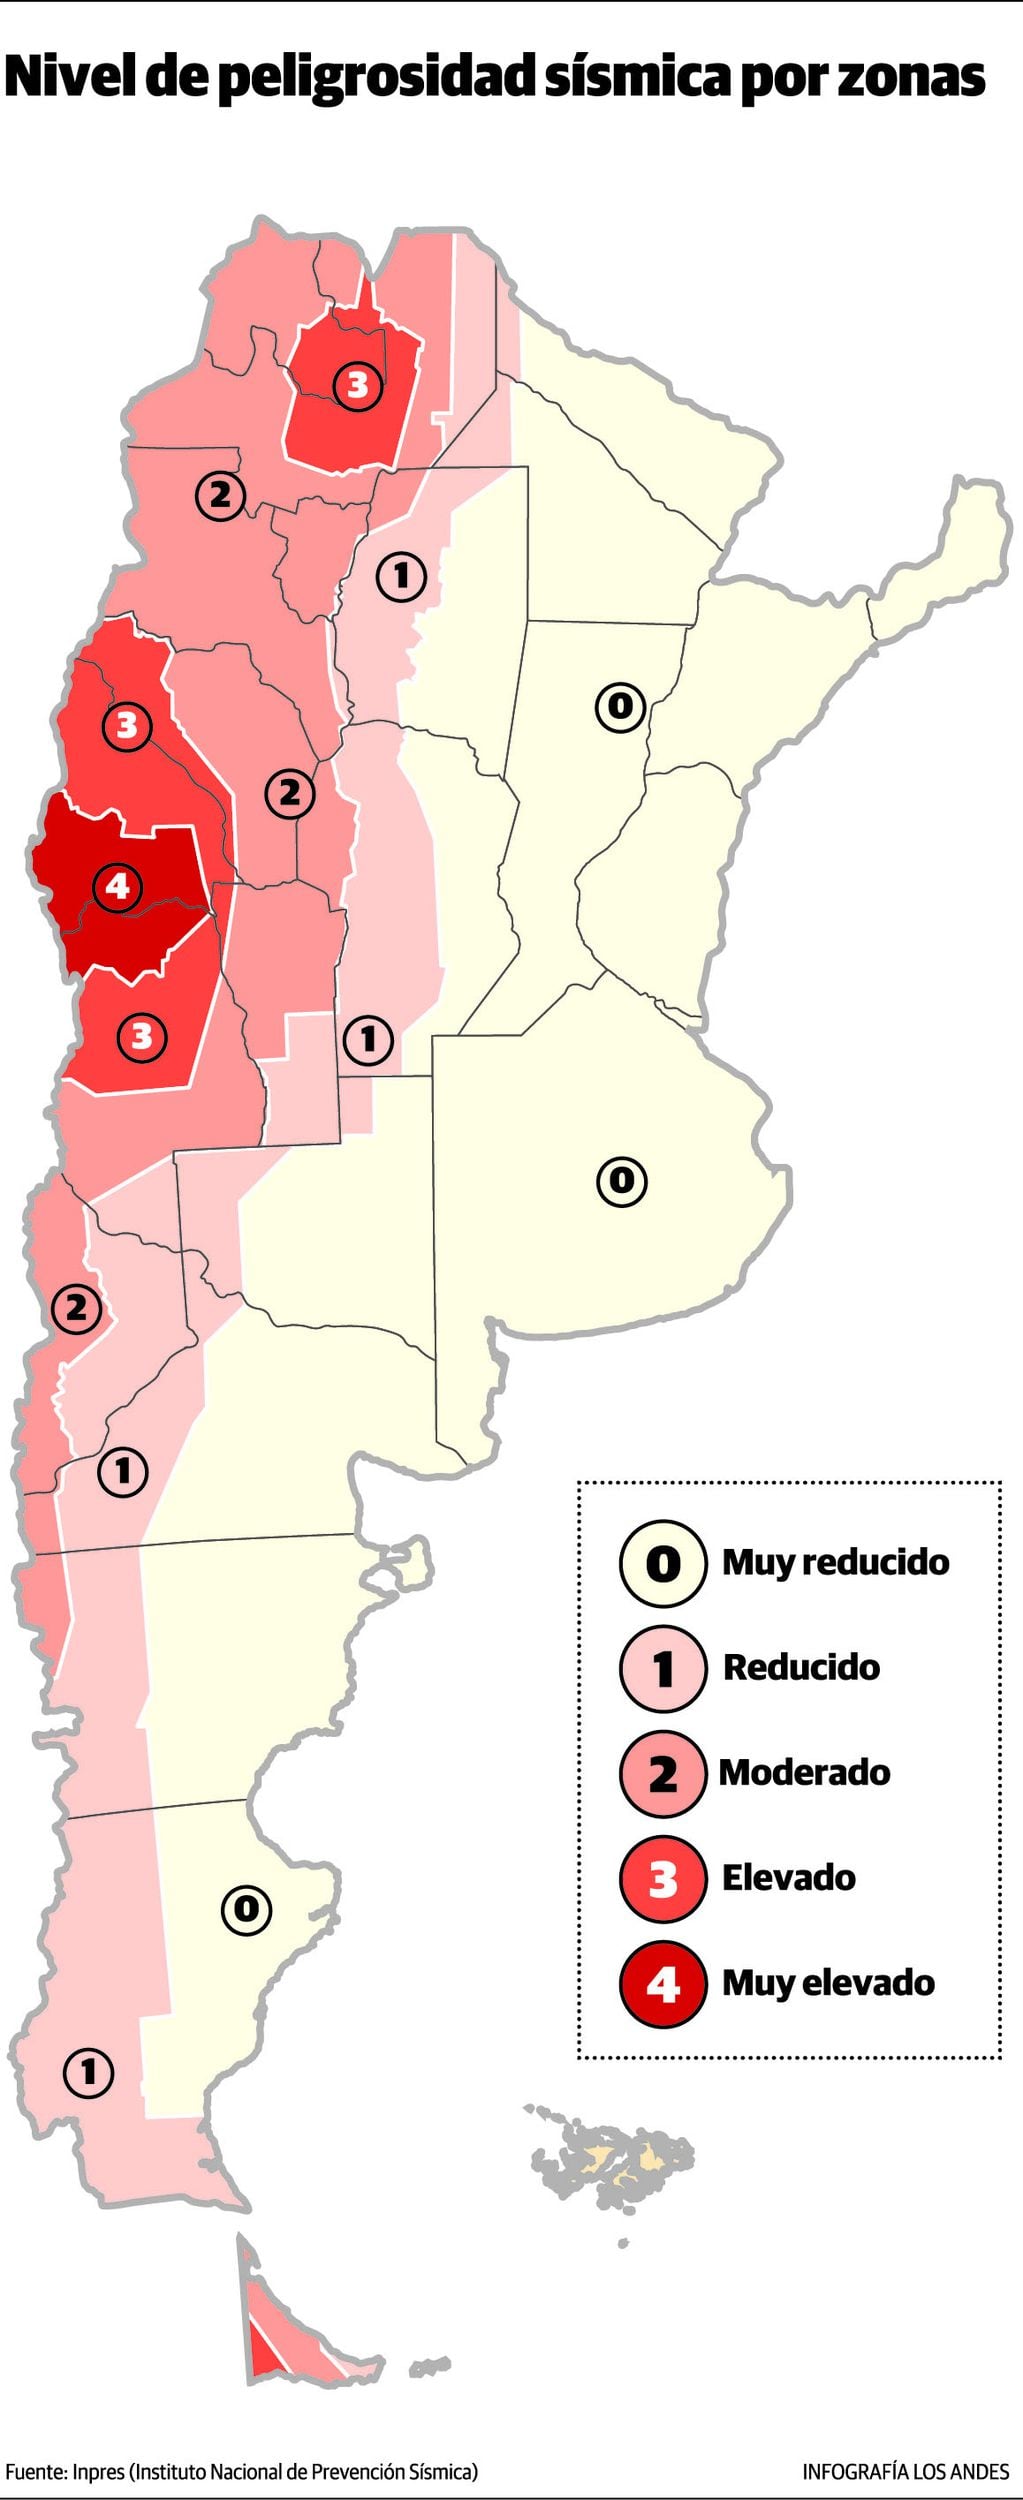 Nivel de peligrosidad sísmica por zonas